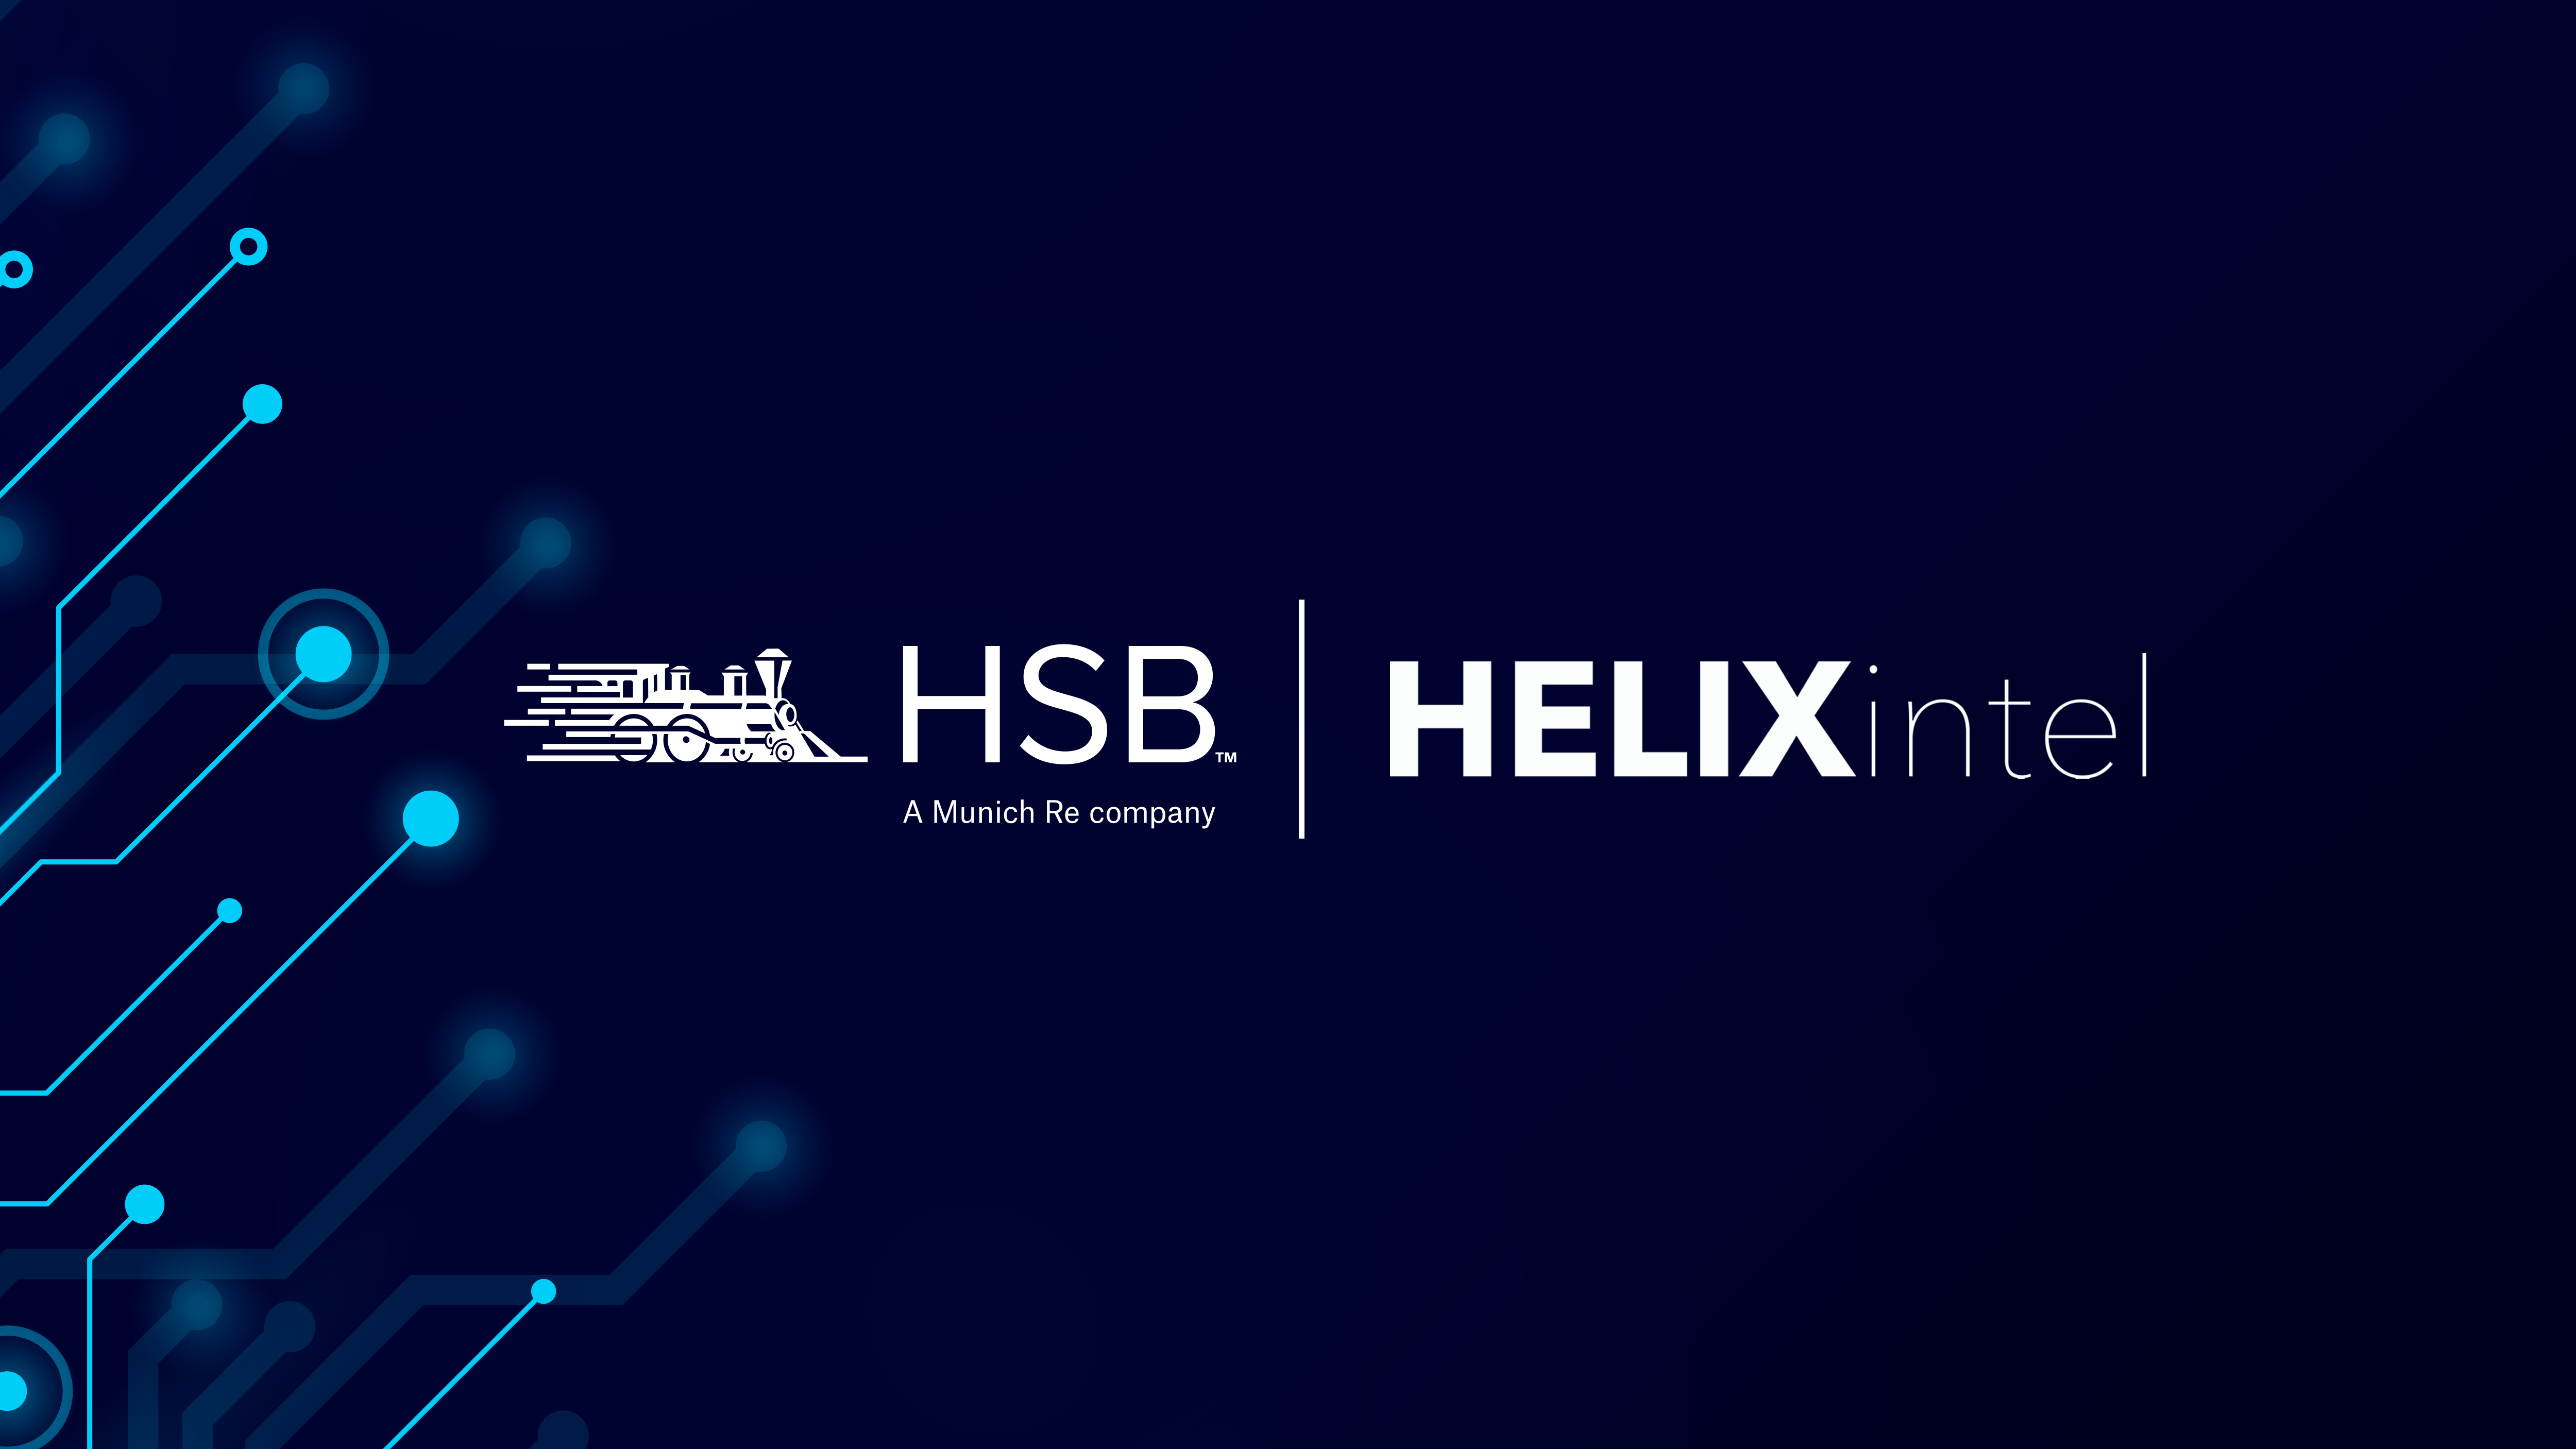 HSB and HelixIntel logos